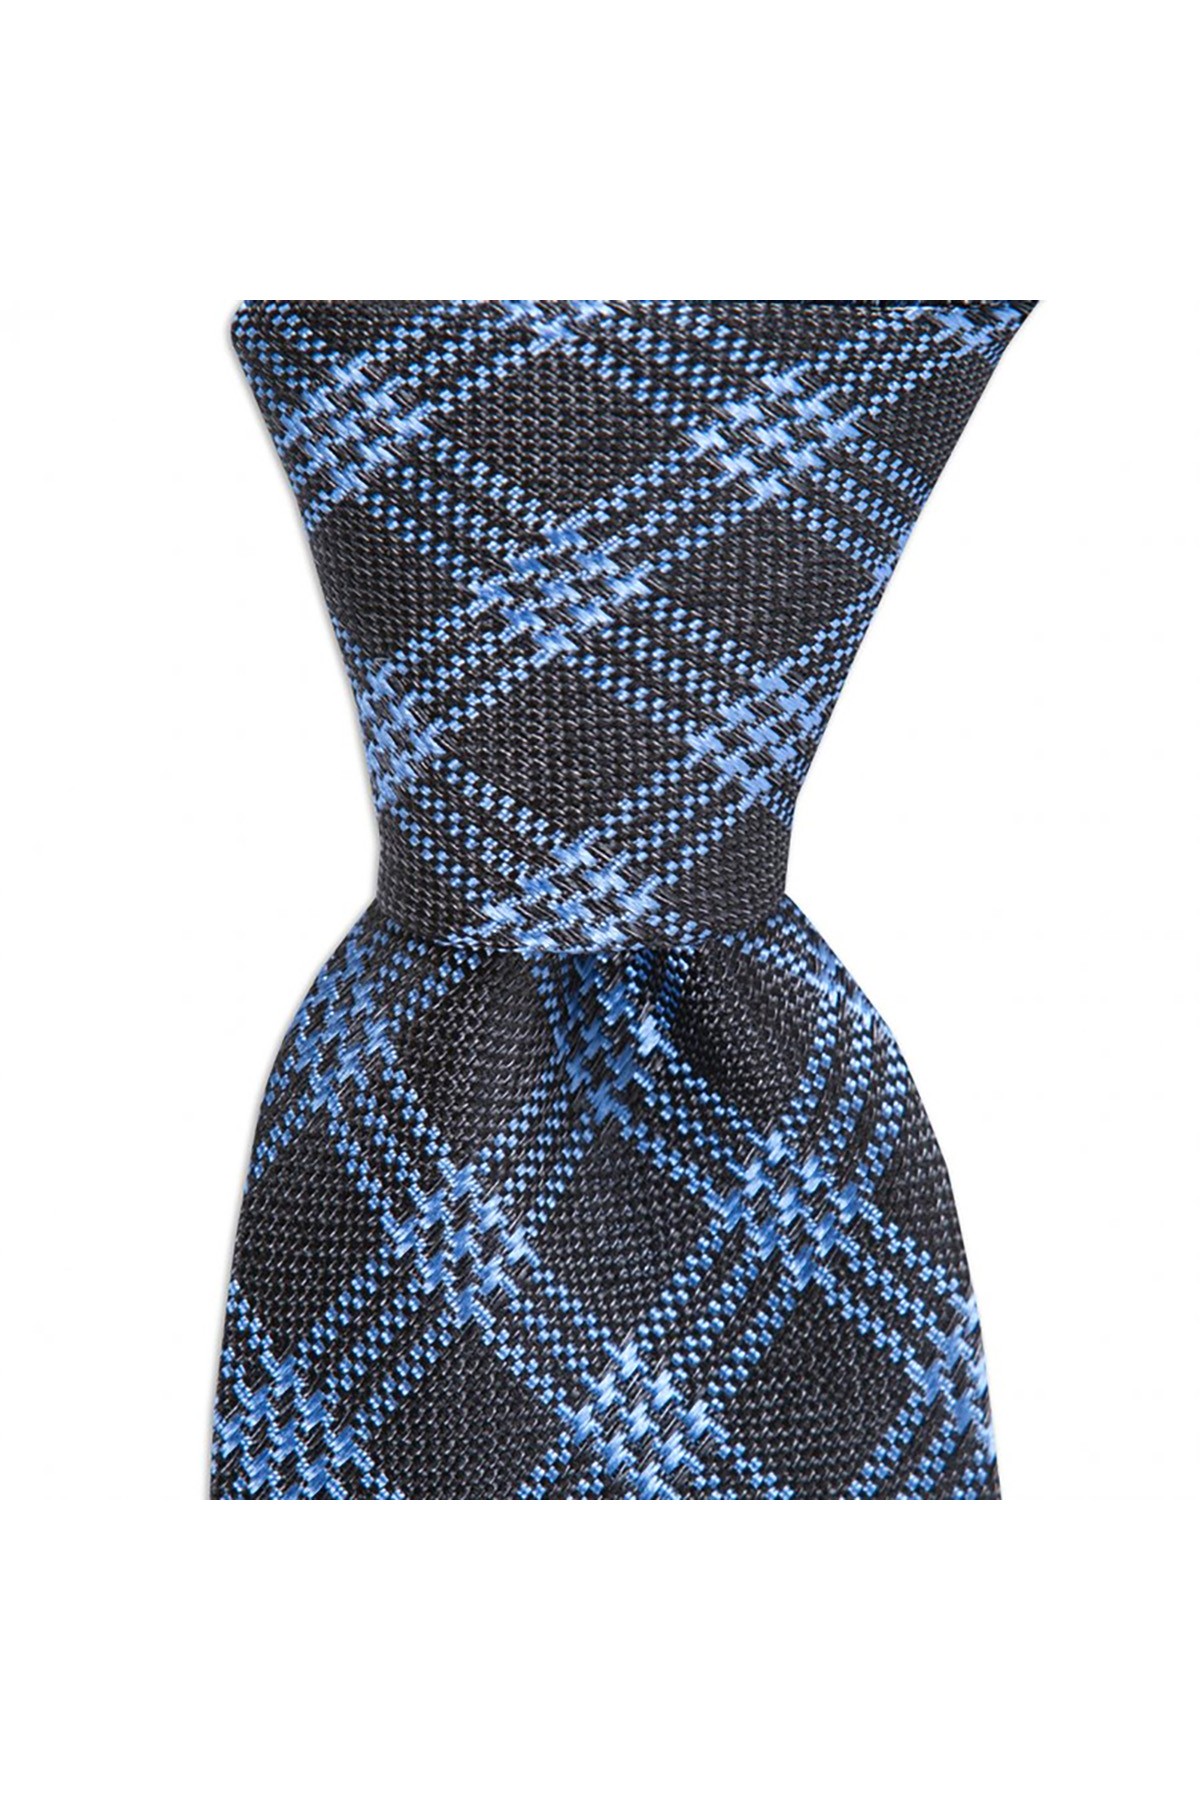 Desenli 8 cm genişliğinde yün ipek karışımlı kravat - Mavi